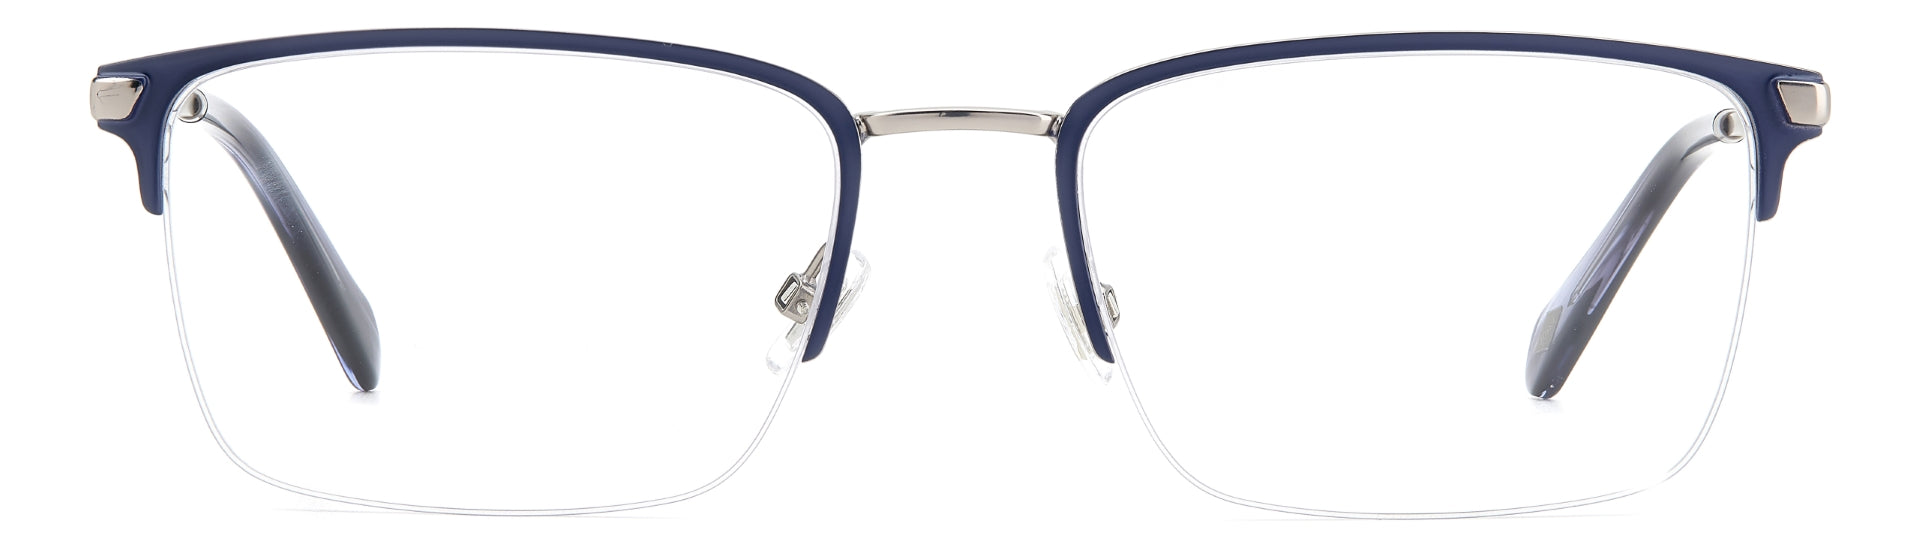 FOSSIL MEN RECTANGULAR Eyeglasses-FOS 7147 S53